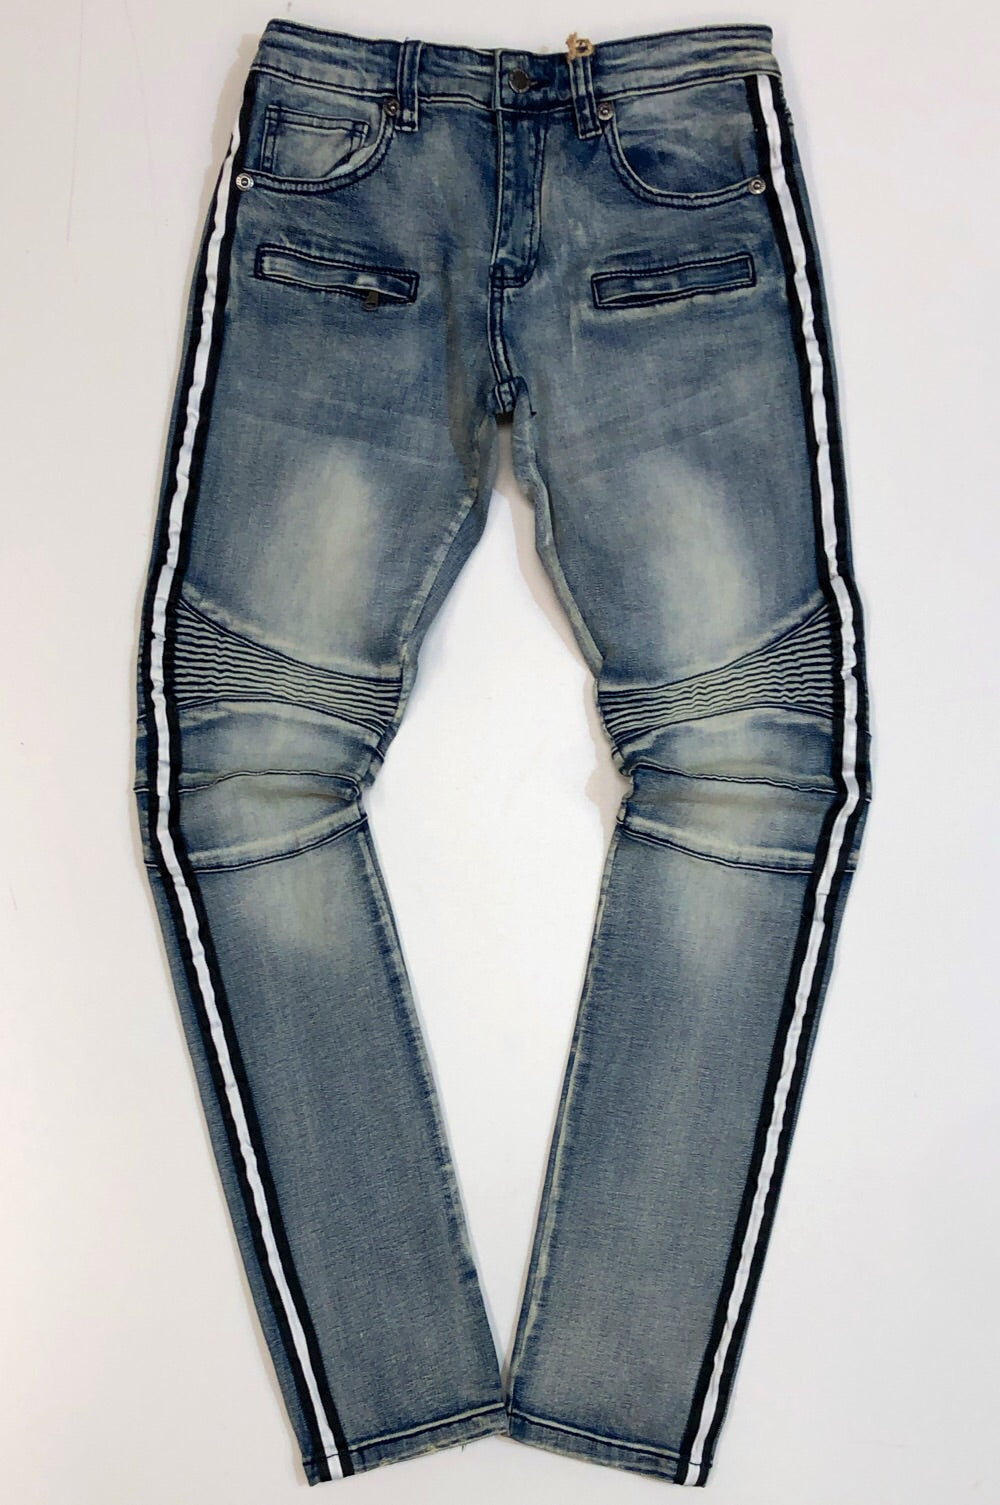 Kilogram- stripe denim jeans